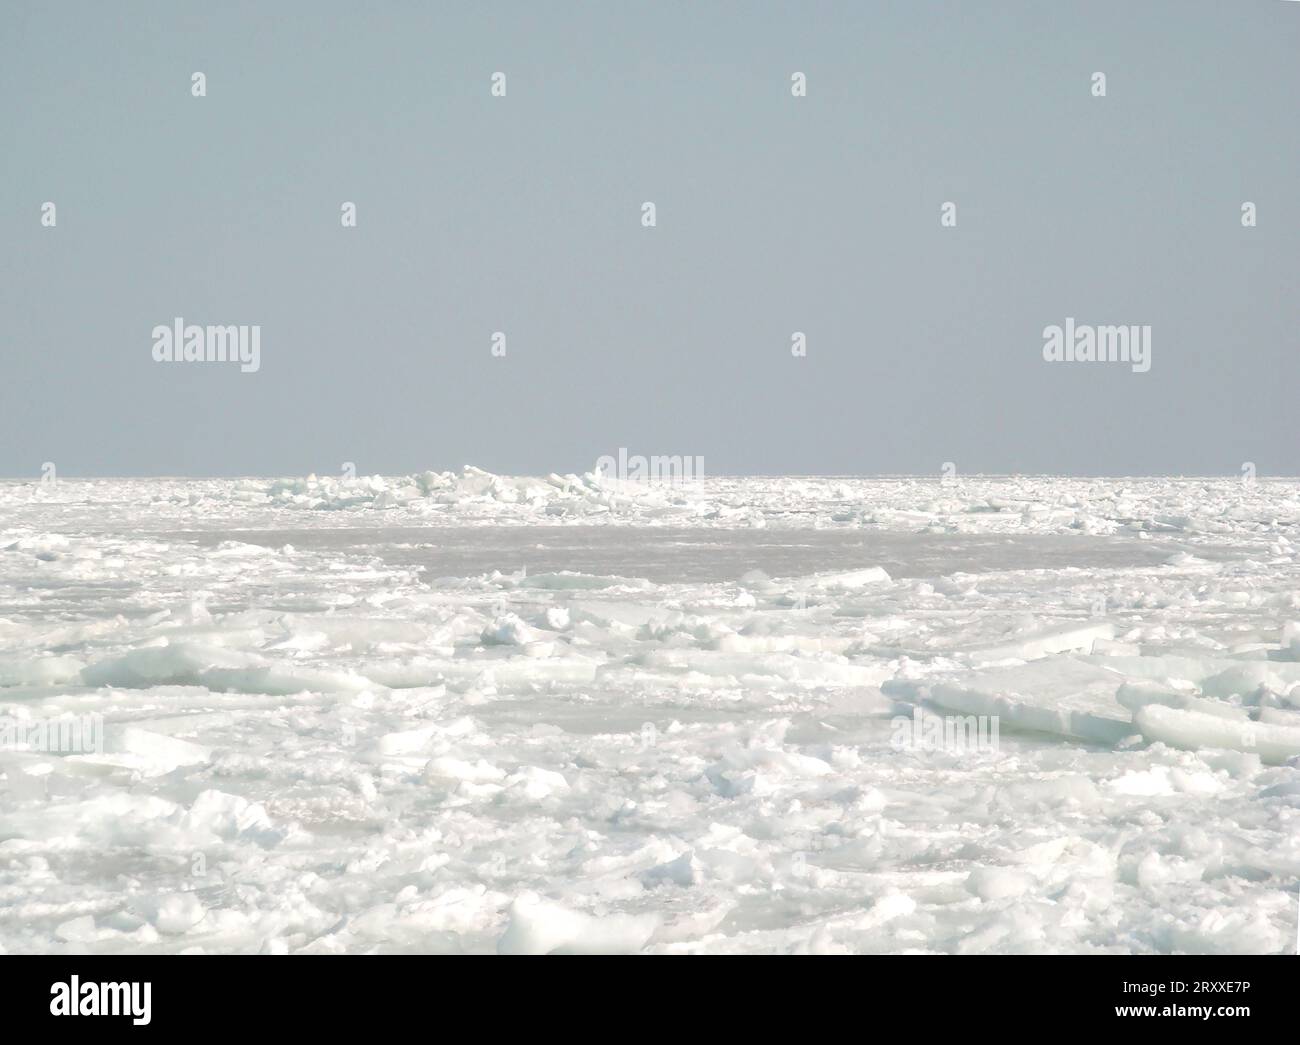 Gefrorenes Meer mit Eisschollen und Schneetreiben, gebrochenes Eis ist am Horizont sichtbar Stockfoto